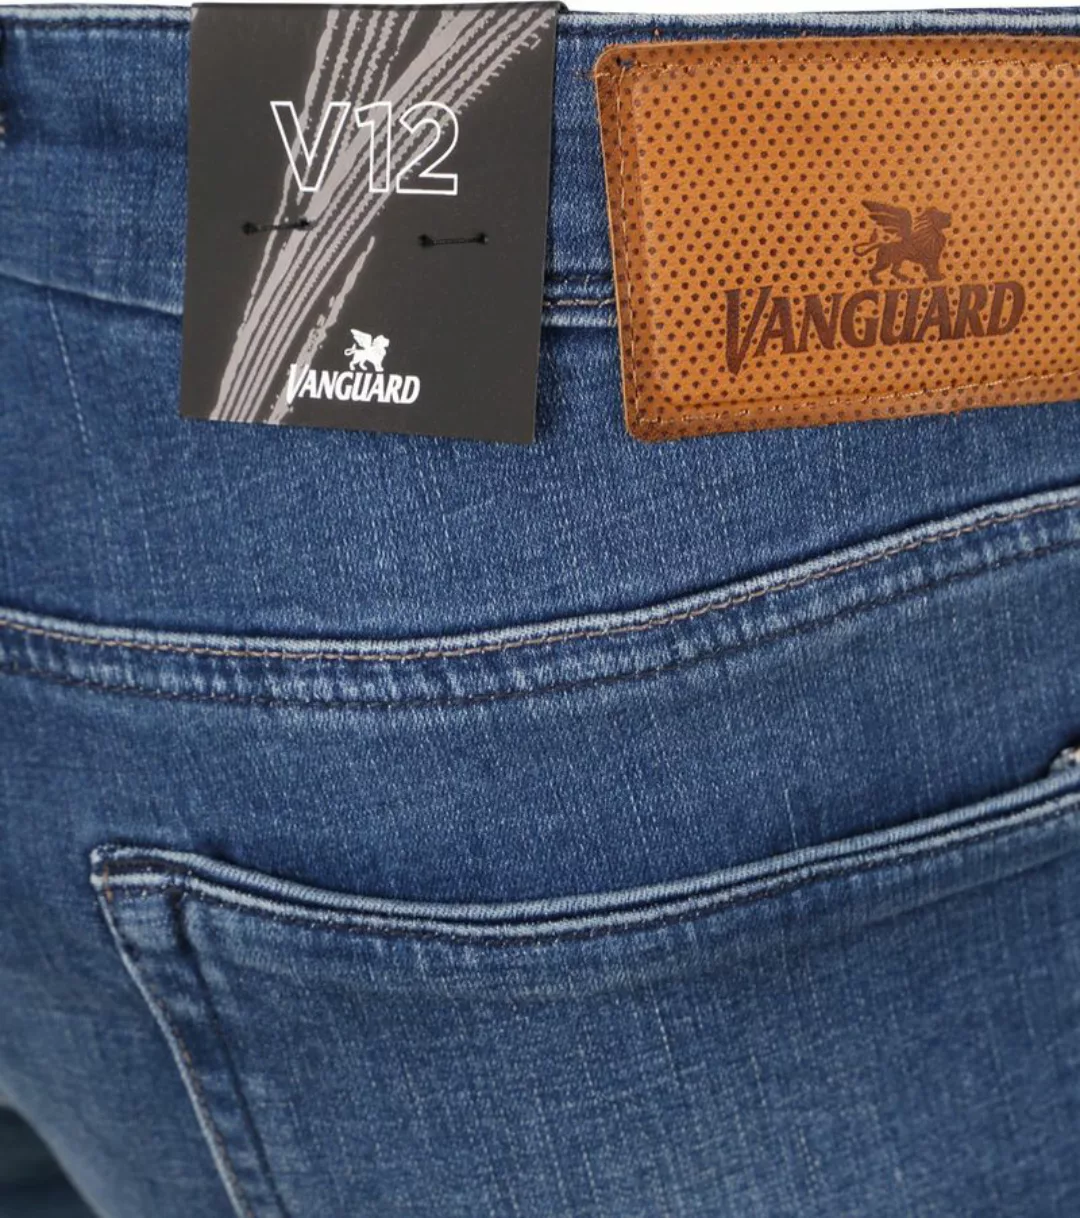 Vanguard Jeans V12 Rider Blau FIB - Größe W 35 - L 30 günstig online kaufen